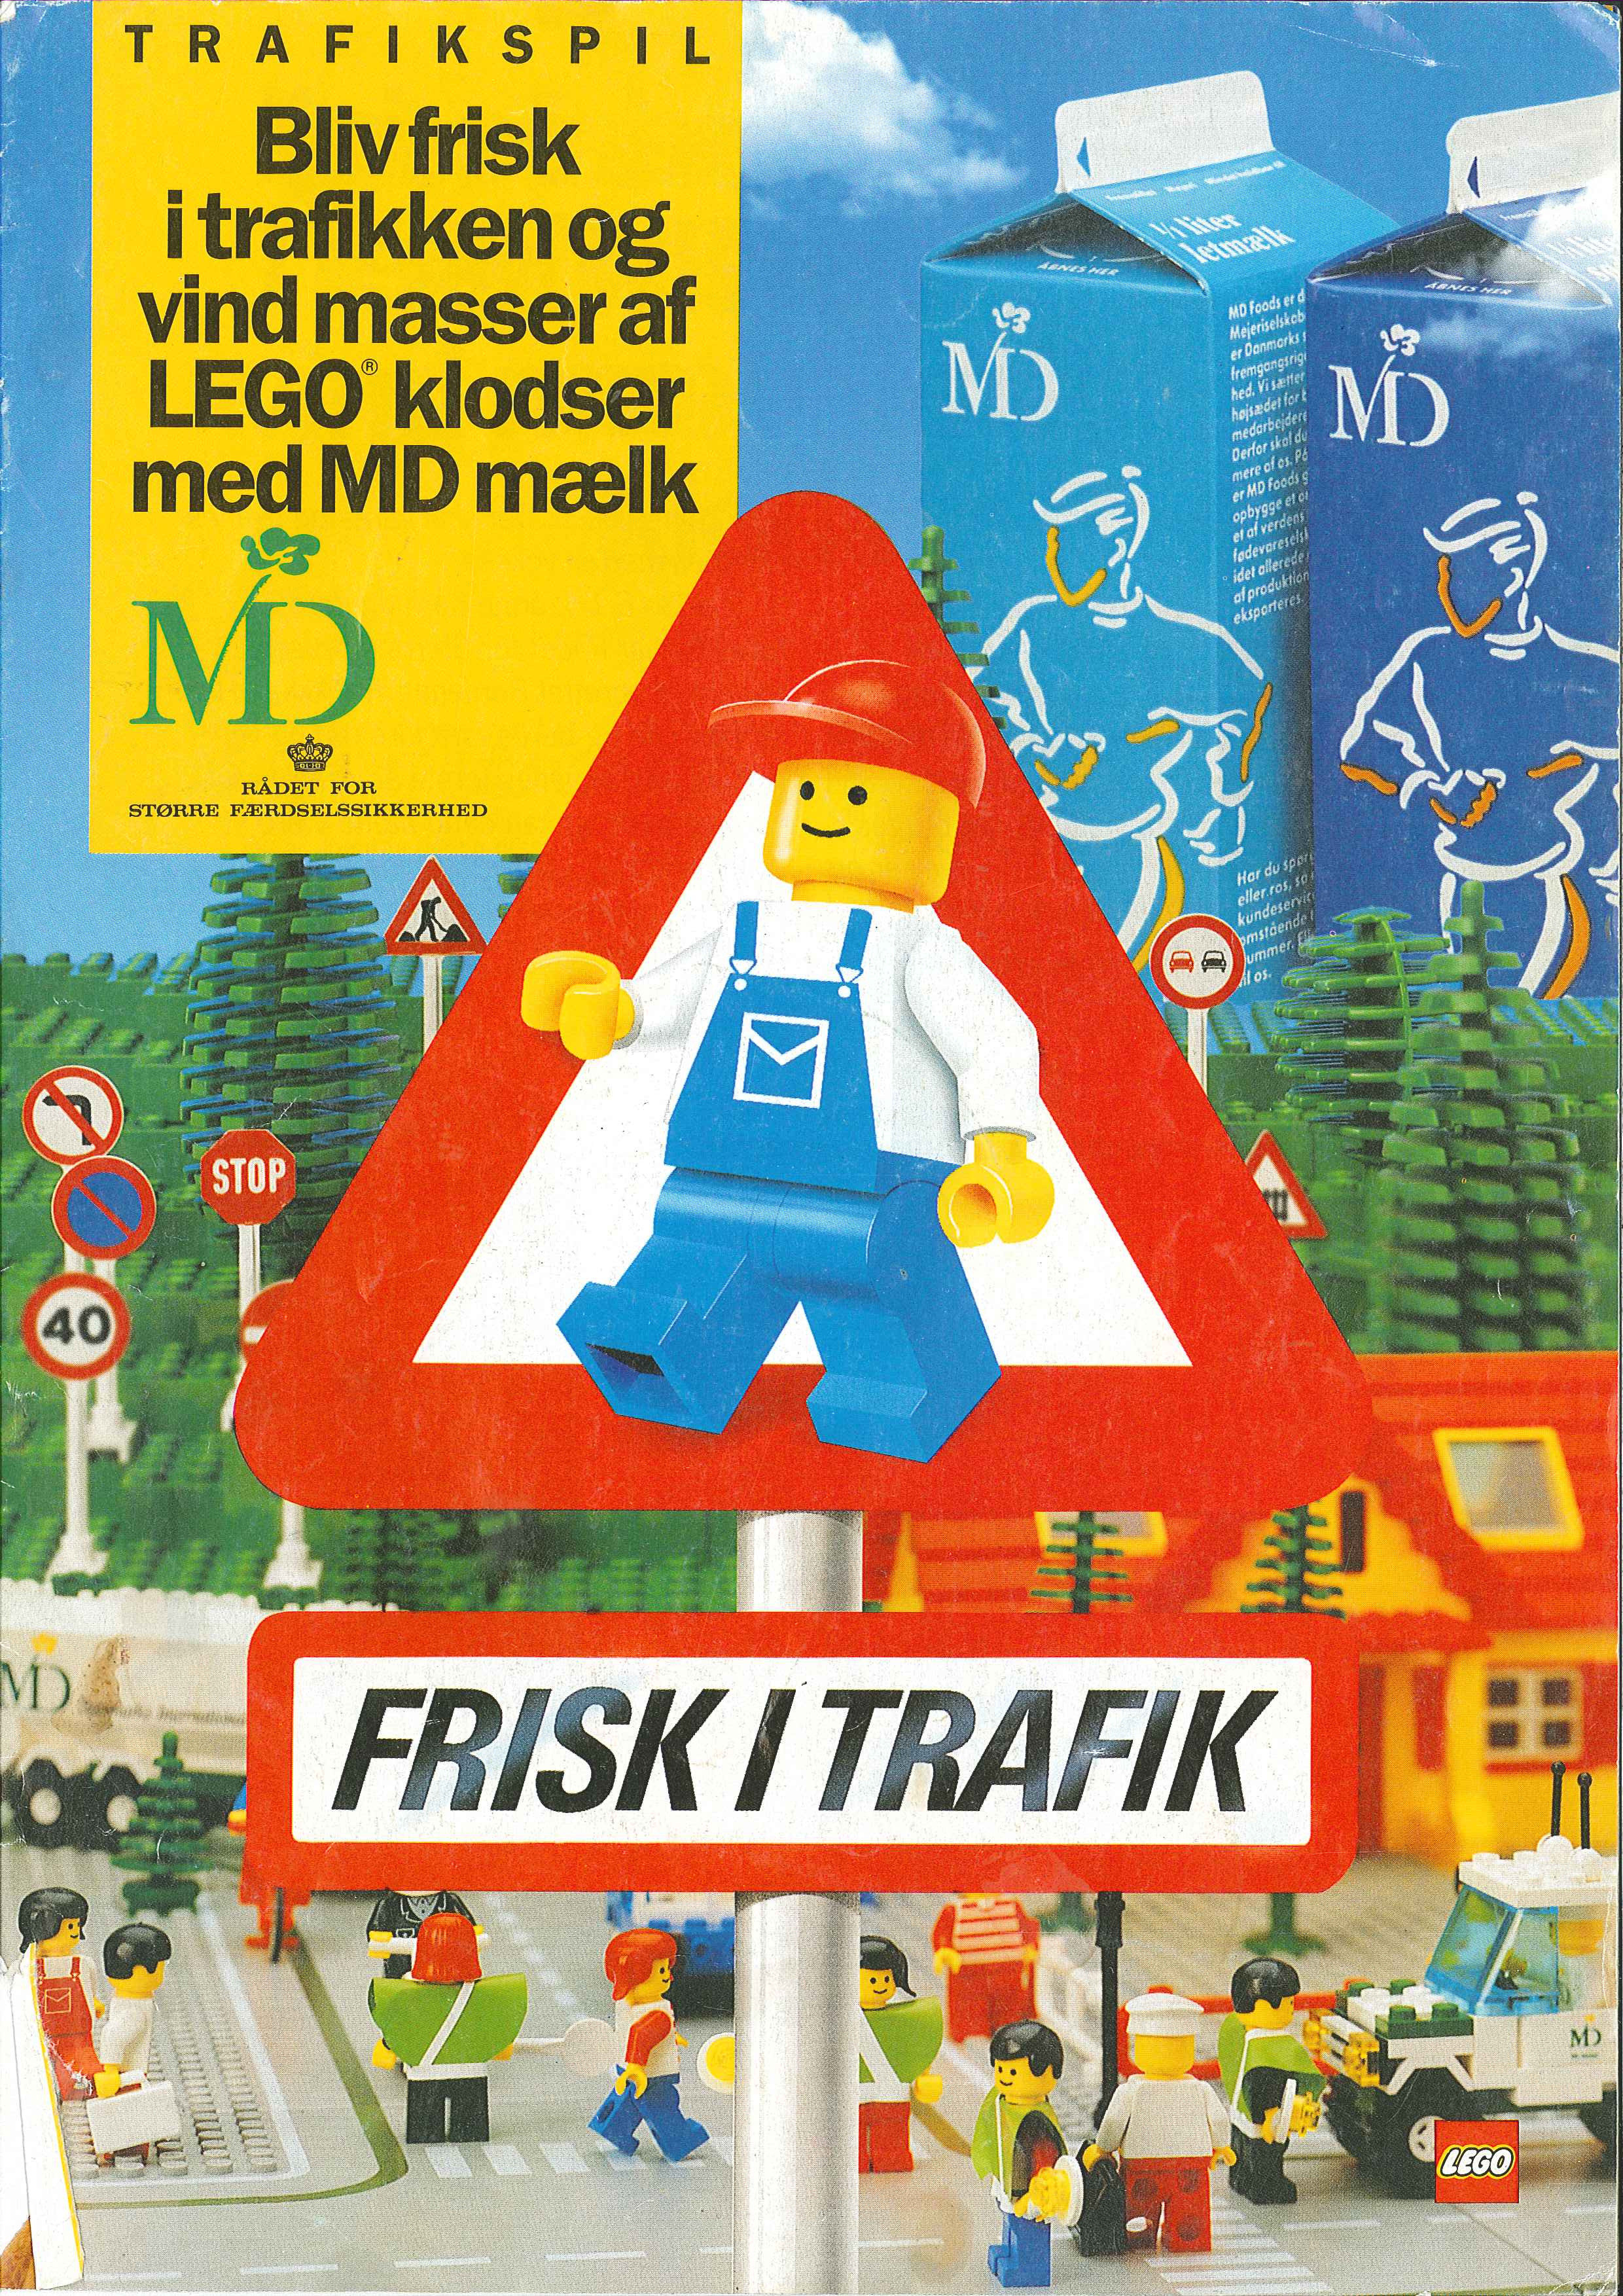 lego_md_foods_1989_-_frisk_i_trafik0001.jpg